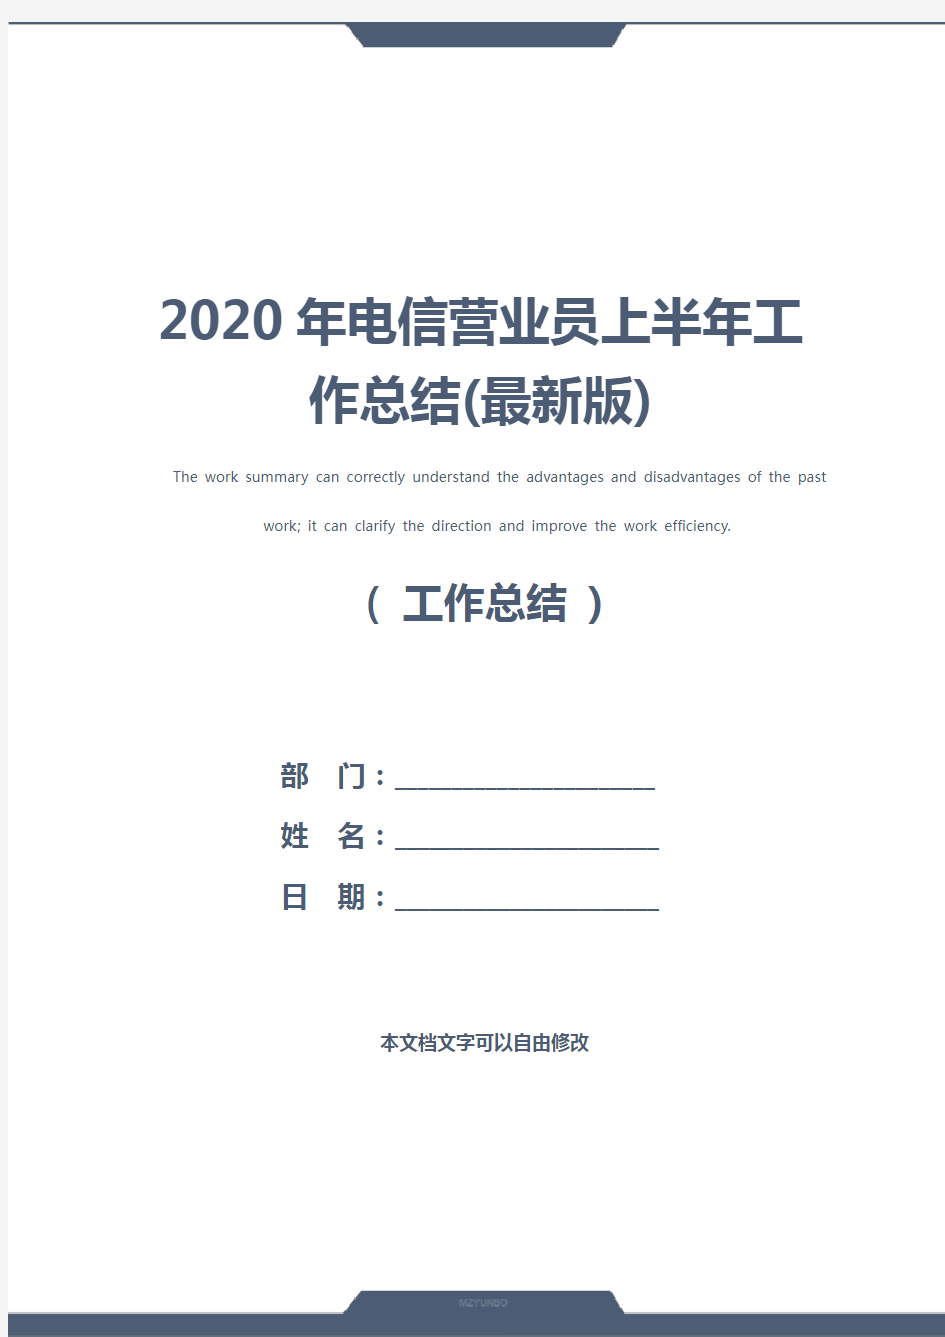 2020年电信营业员上半年工作总结(最新版)